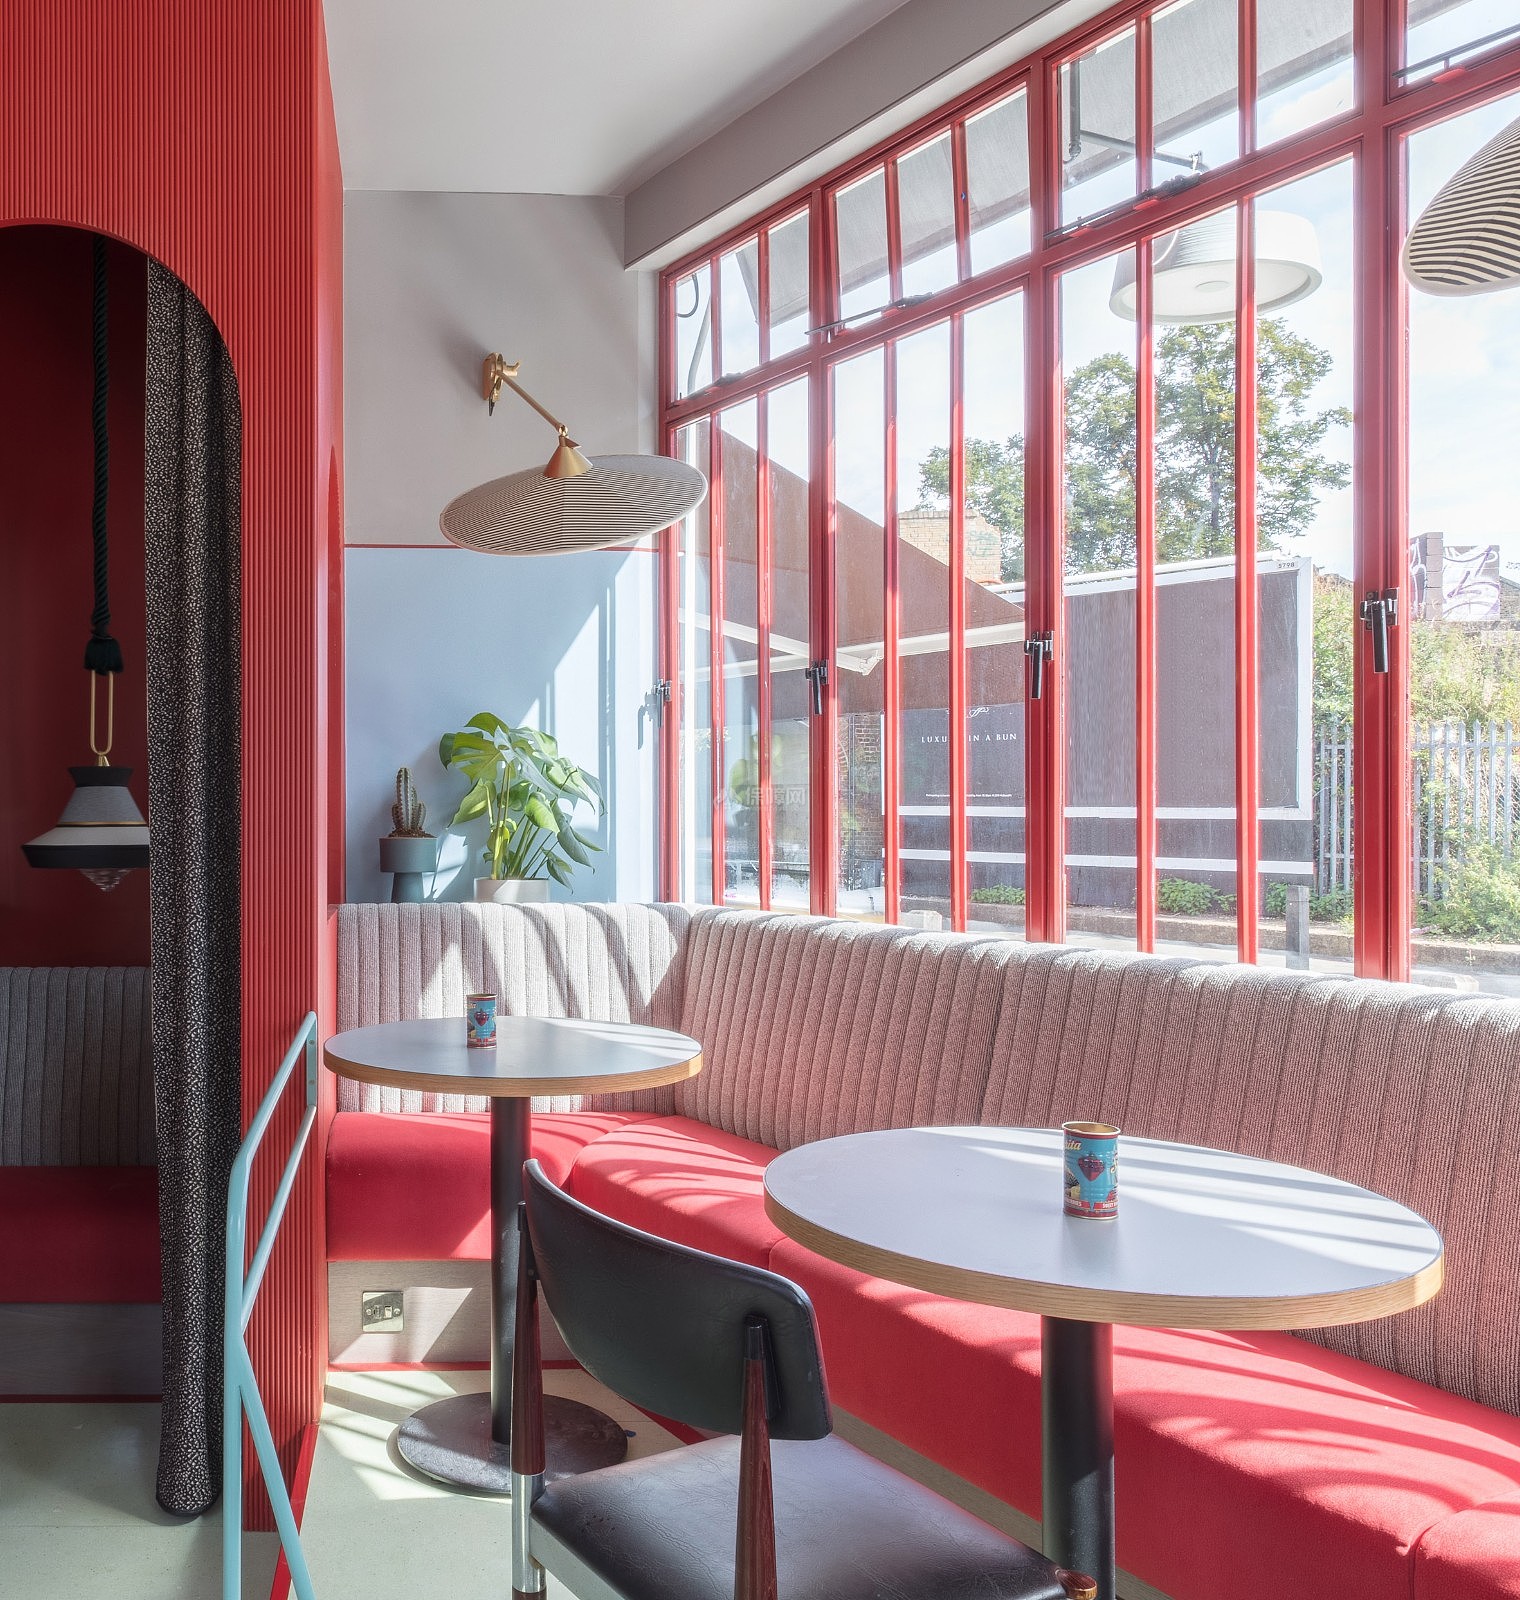 伦敦 piraa餐厅之沙发布置效果图